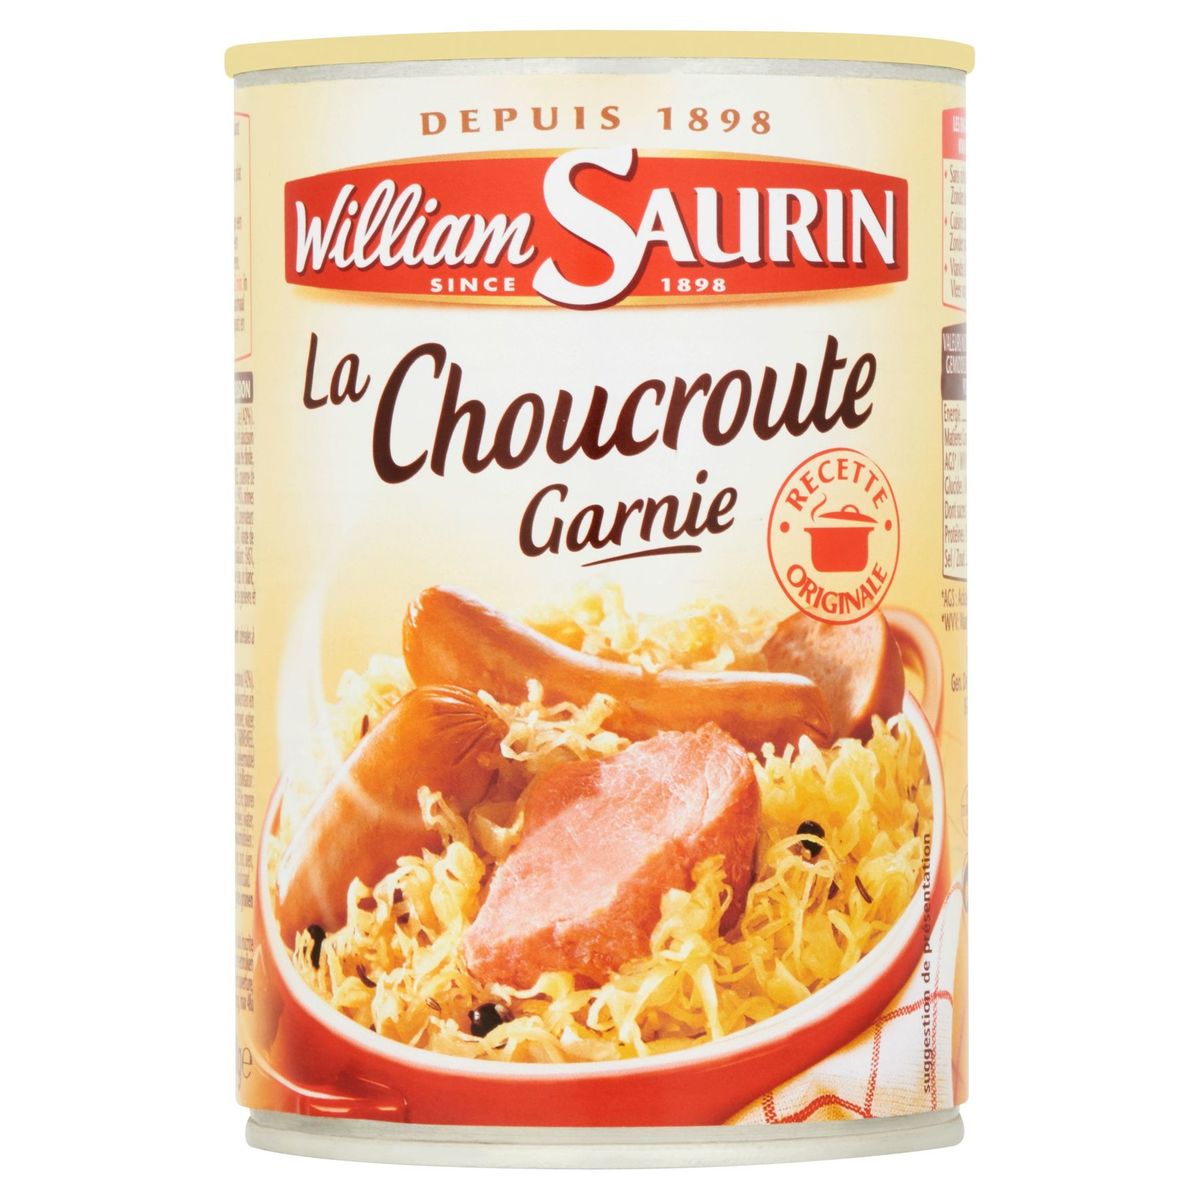 William Saurin la Choucroute Garnie 400 g